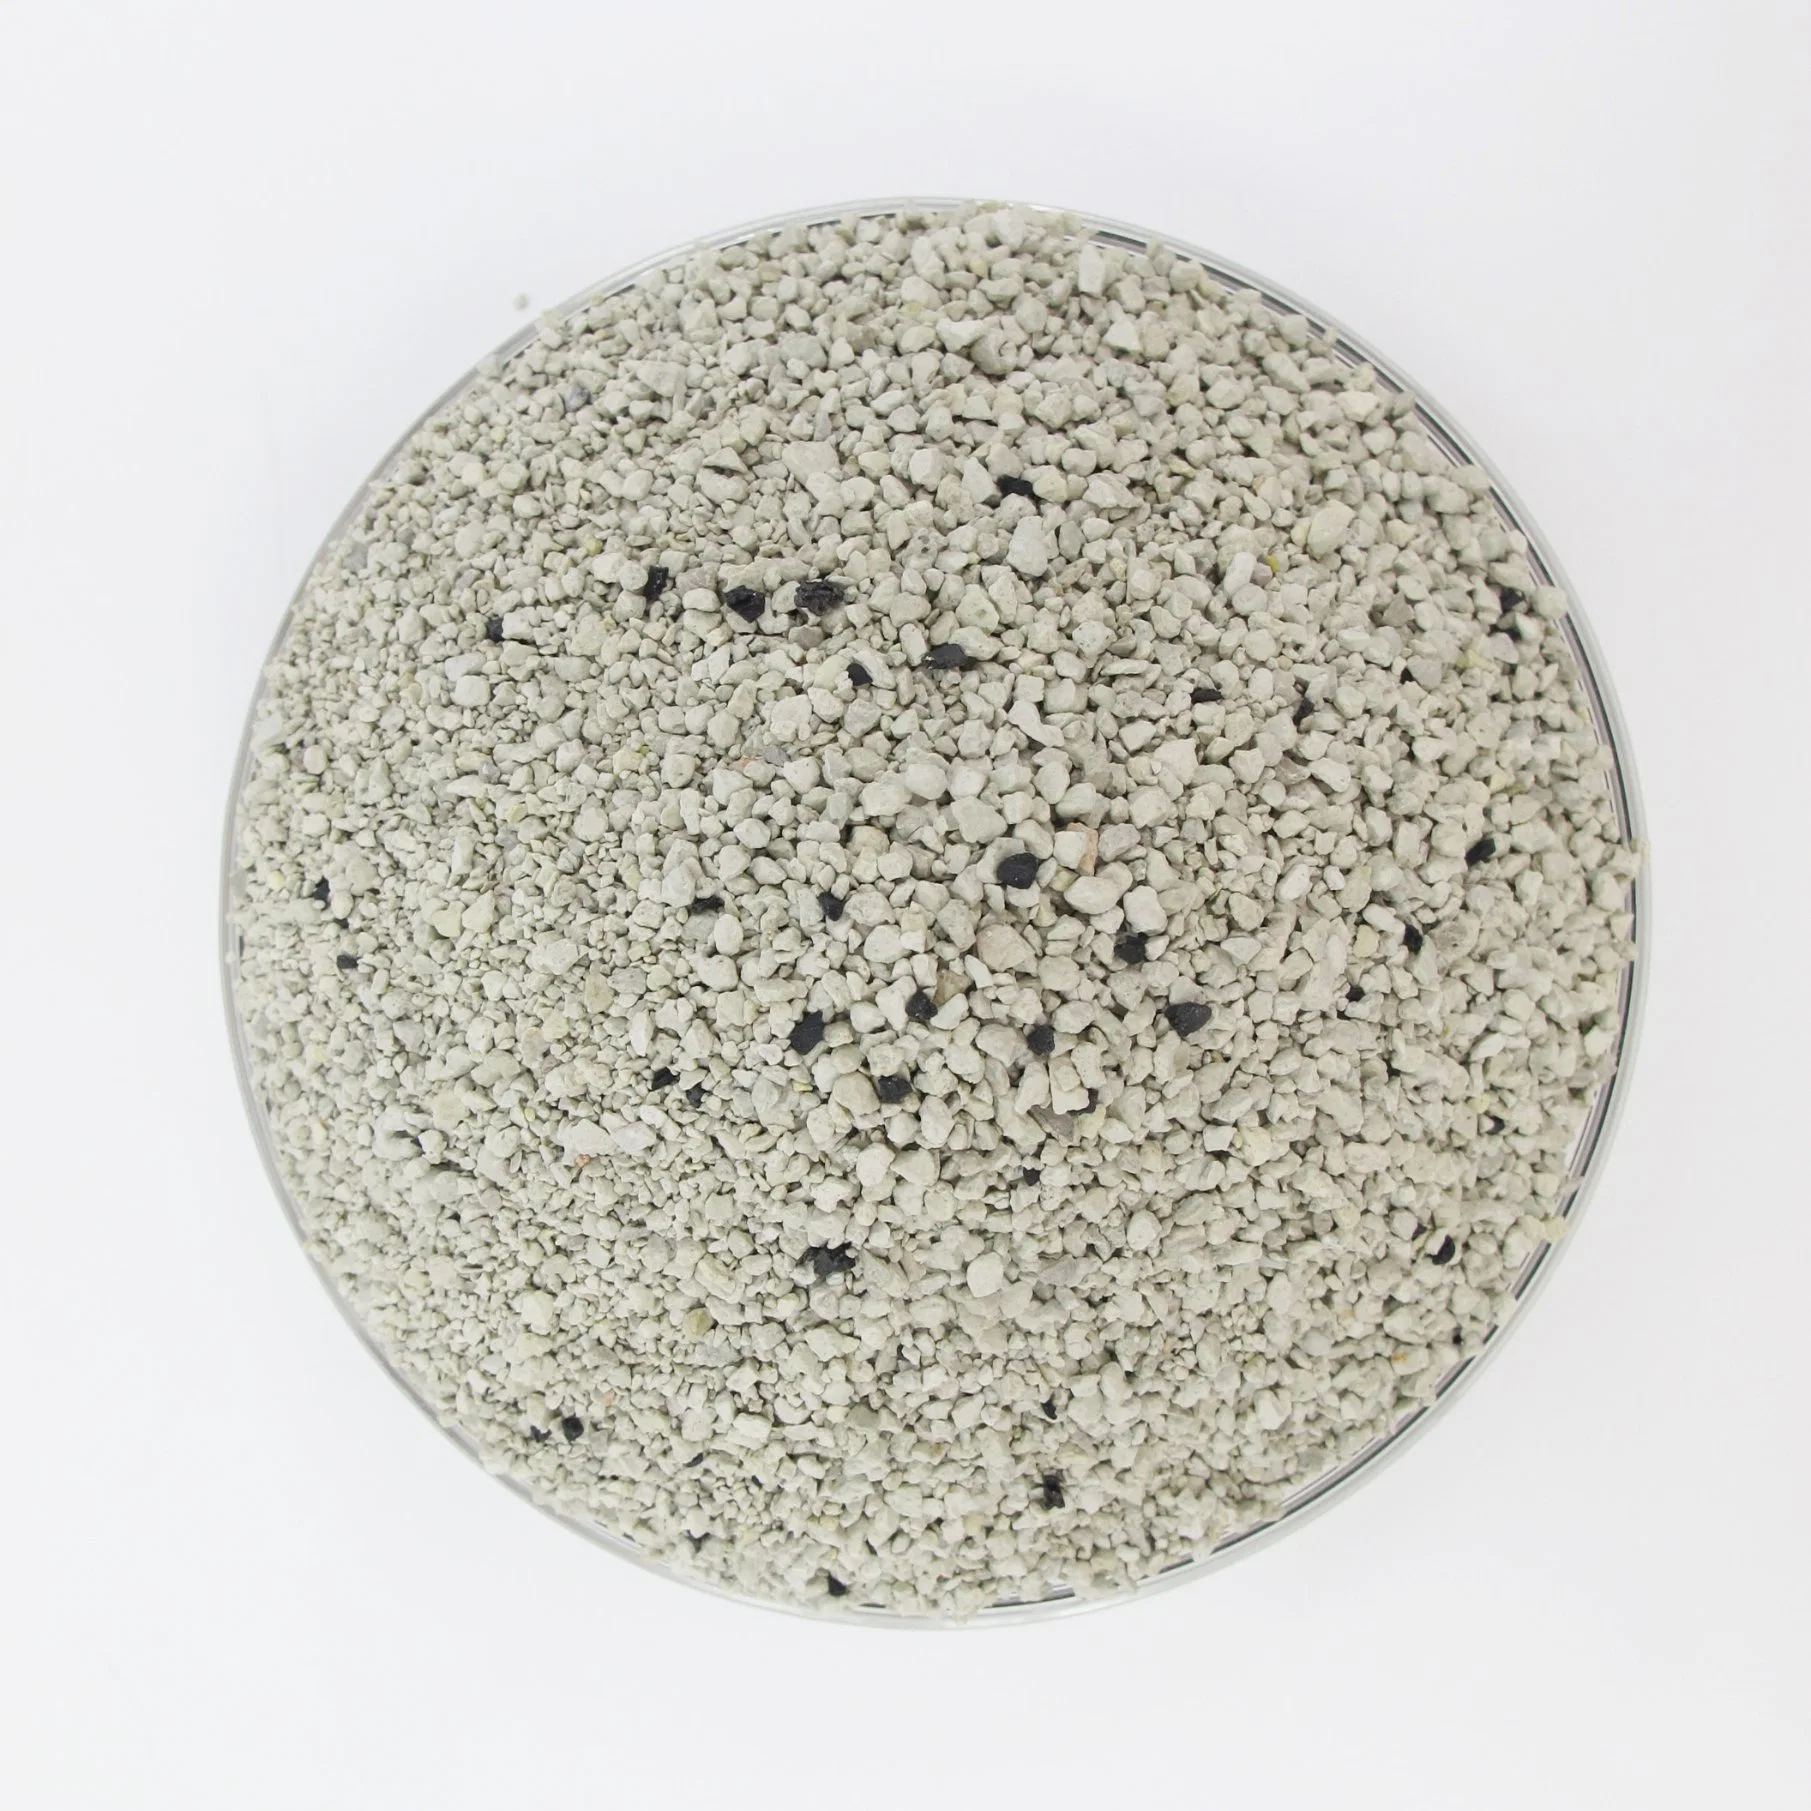 تحكم رائج رائحة العطر Clumping مع المغارف 0.5-2.5 مم 50% Montmorillonite +50% أرجوانية صدع صخرة +0.5-2.5 مم من الرمال المنزلية النشطة من نوع أوريز بنتونايت الطين